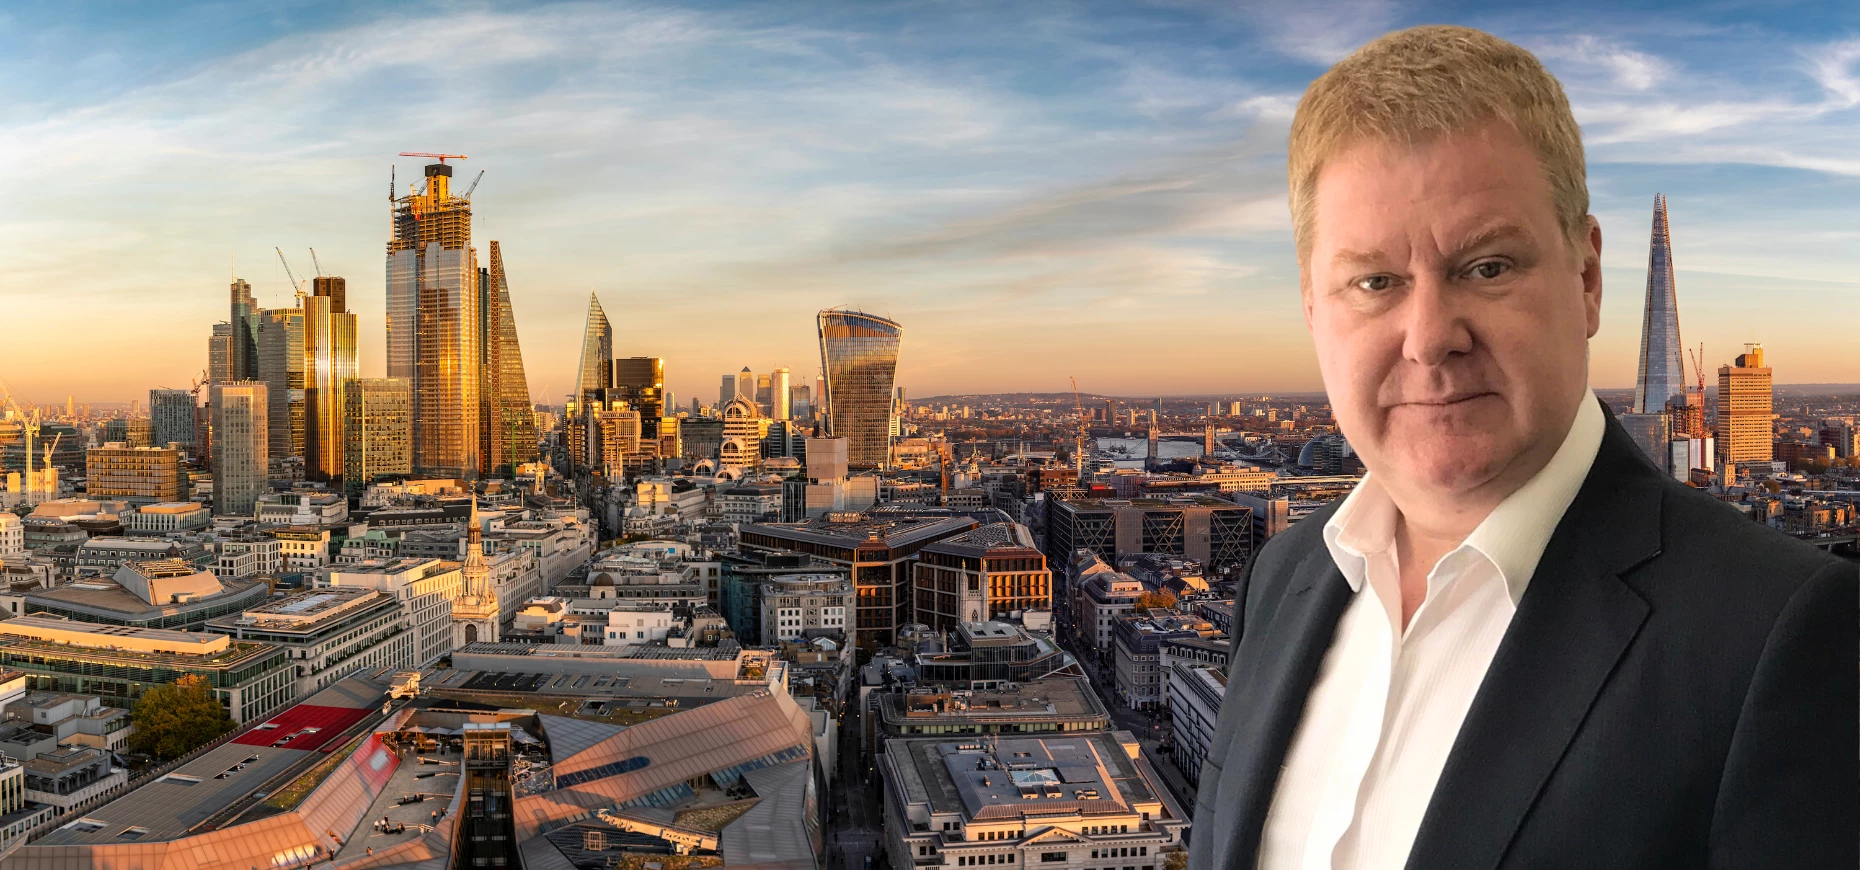 Stephen Fletcher, CEO Ireland, Freemarket, pictured against the London skyline.